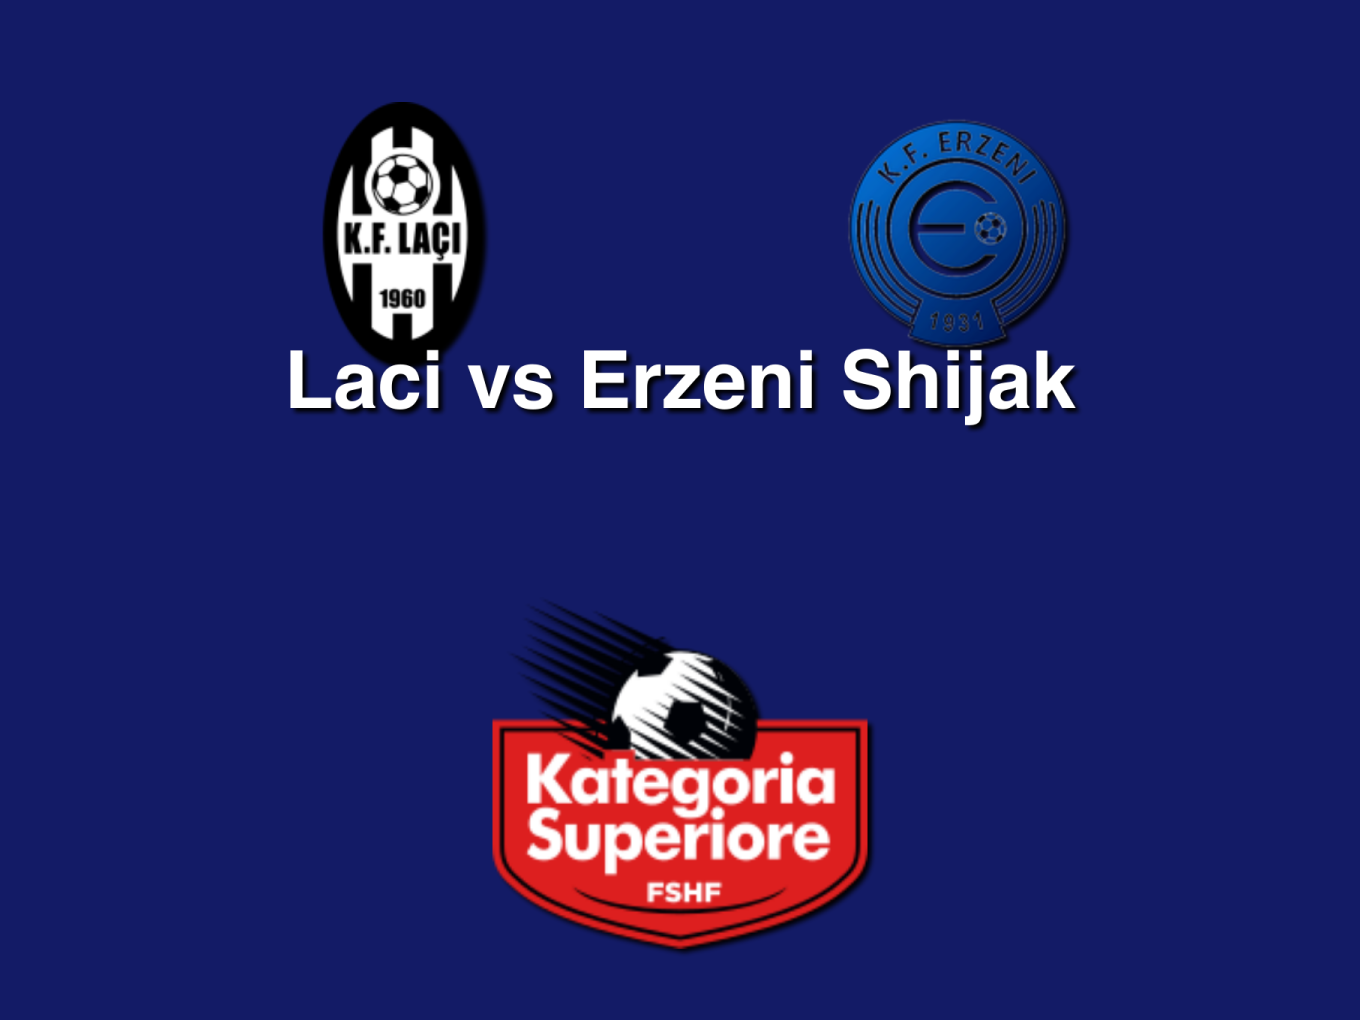 FK Laci x KF Erzeni Shijak » Placar ao vivo, Palpites